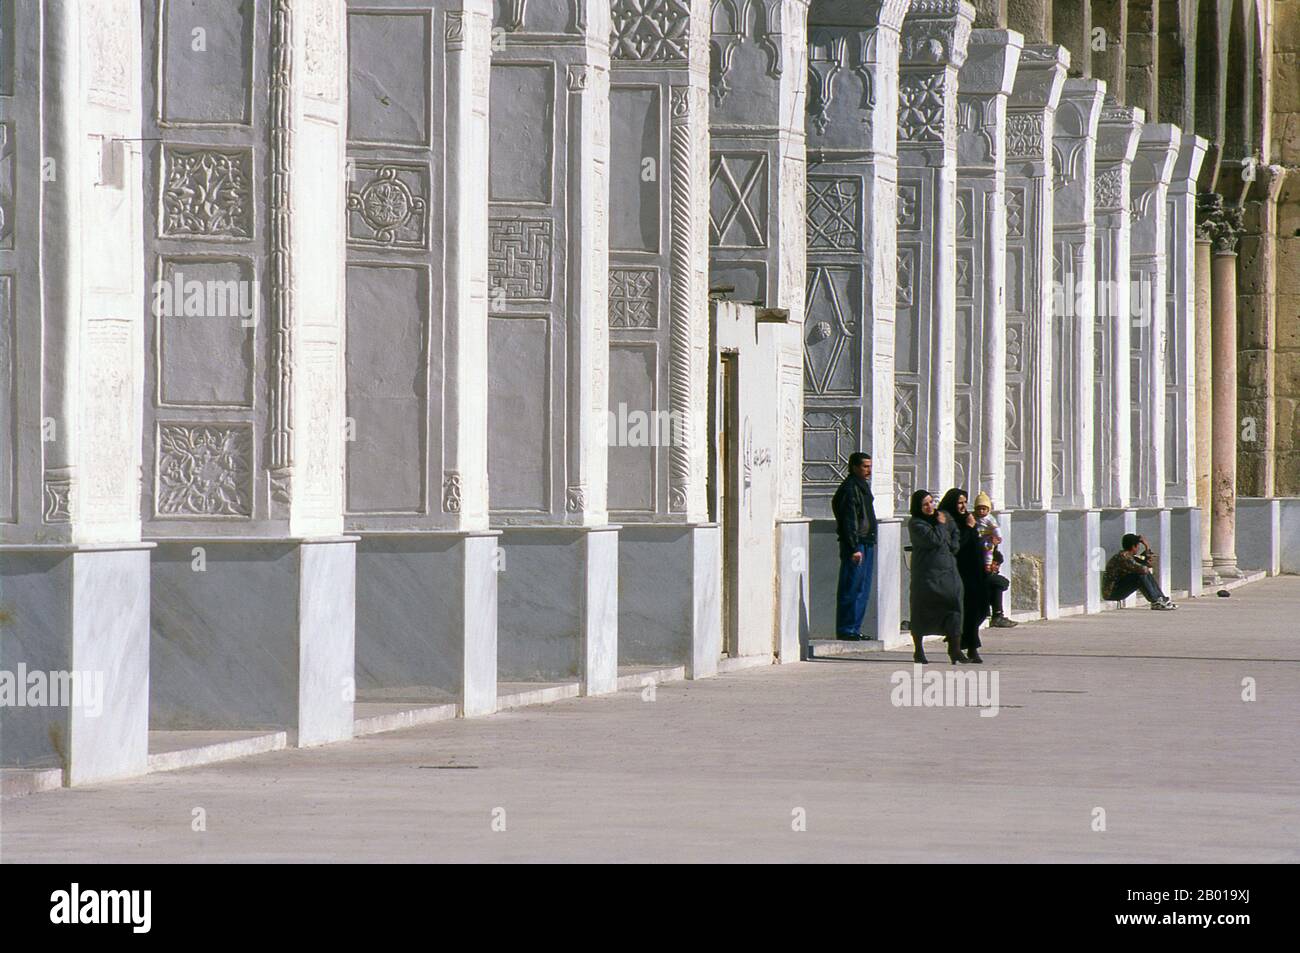 Siria: Cortile centrale, Moschea di Umayyyad, Damasco. La Moschea di Umayyyad, conosciuta anche come la Grande Moschea di Damasco, è una delle moschee più grandi e più antiche del mondo. È considerato il quarto posto più sacro dell'Islam. Si ritiene che la costruzione della moschea sia iniziata subito dopo la conquista araba di Damasco nel 634. La moschea contiene un santuario dedicato a Giovanni Battista e la tomba di Saladino. Foto Stock